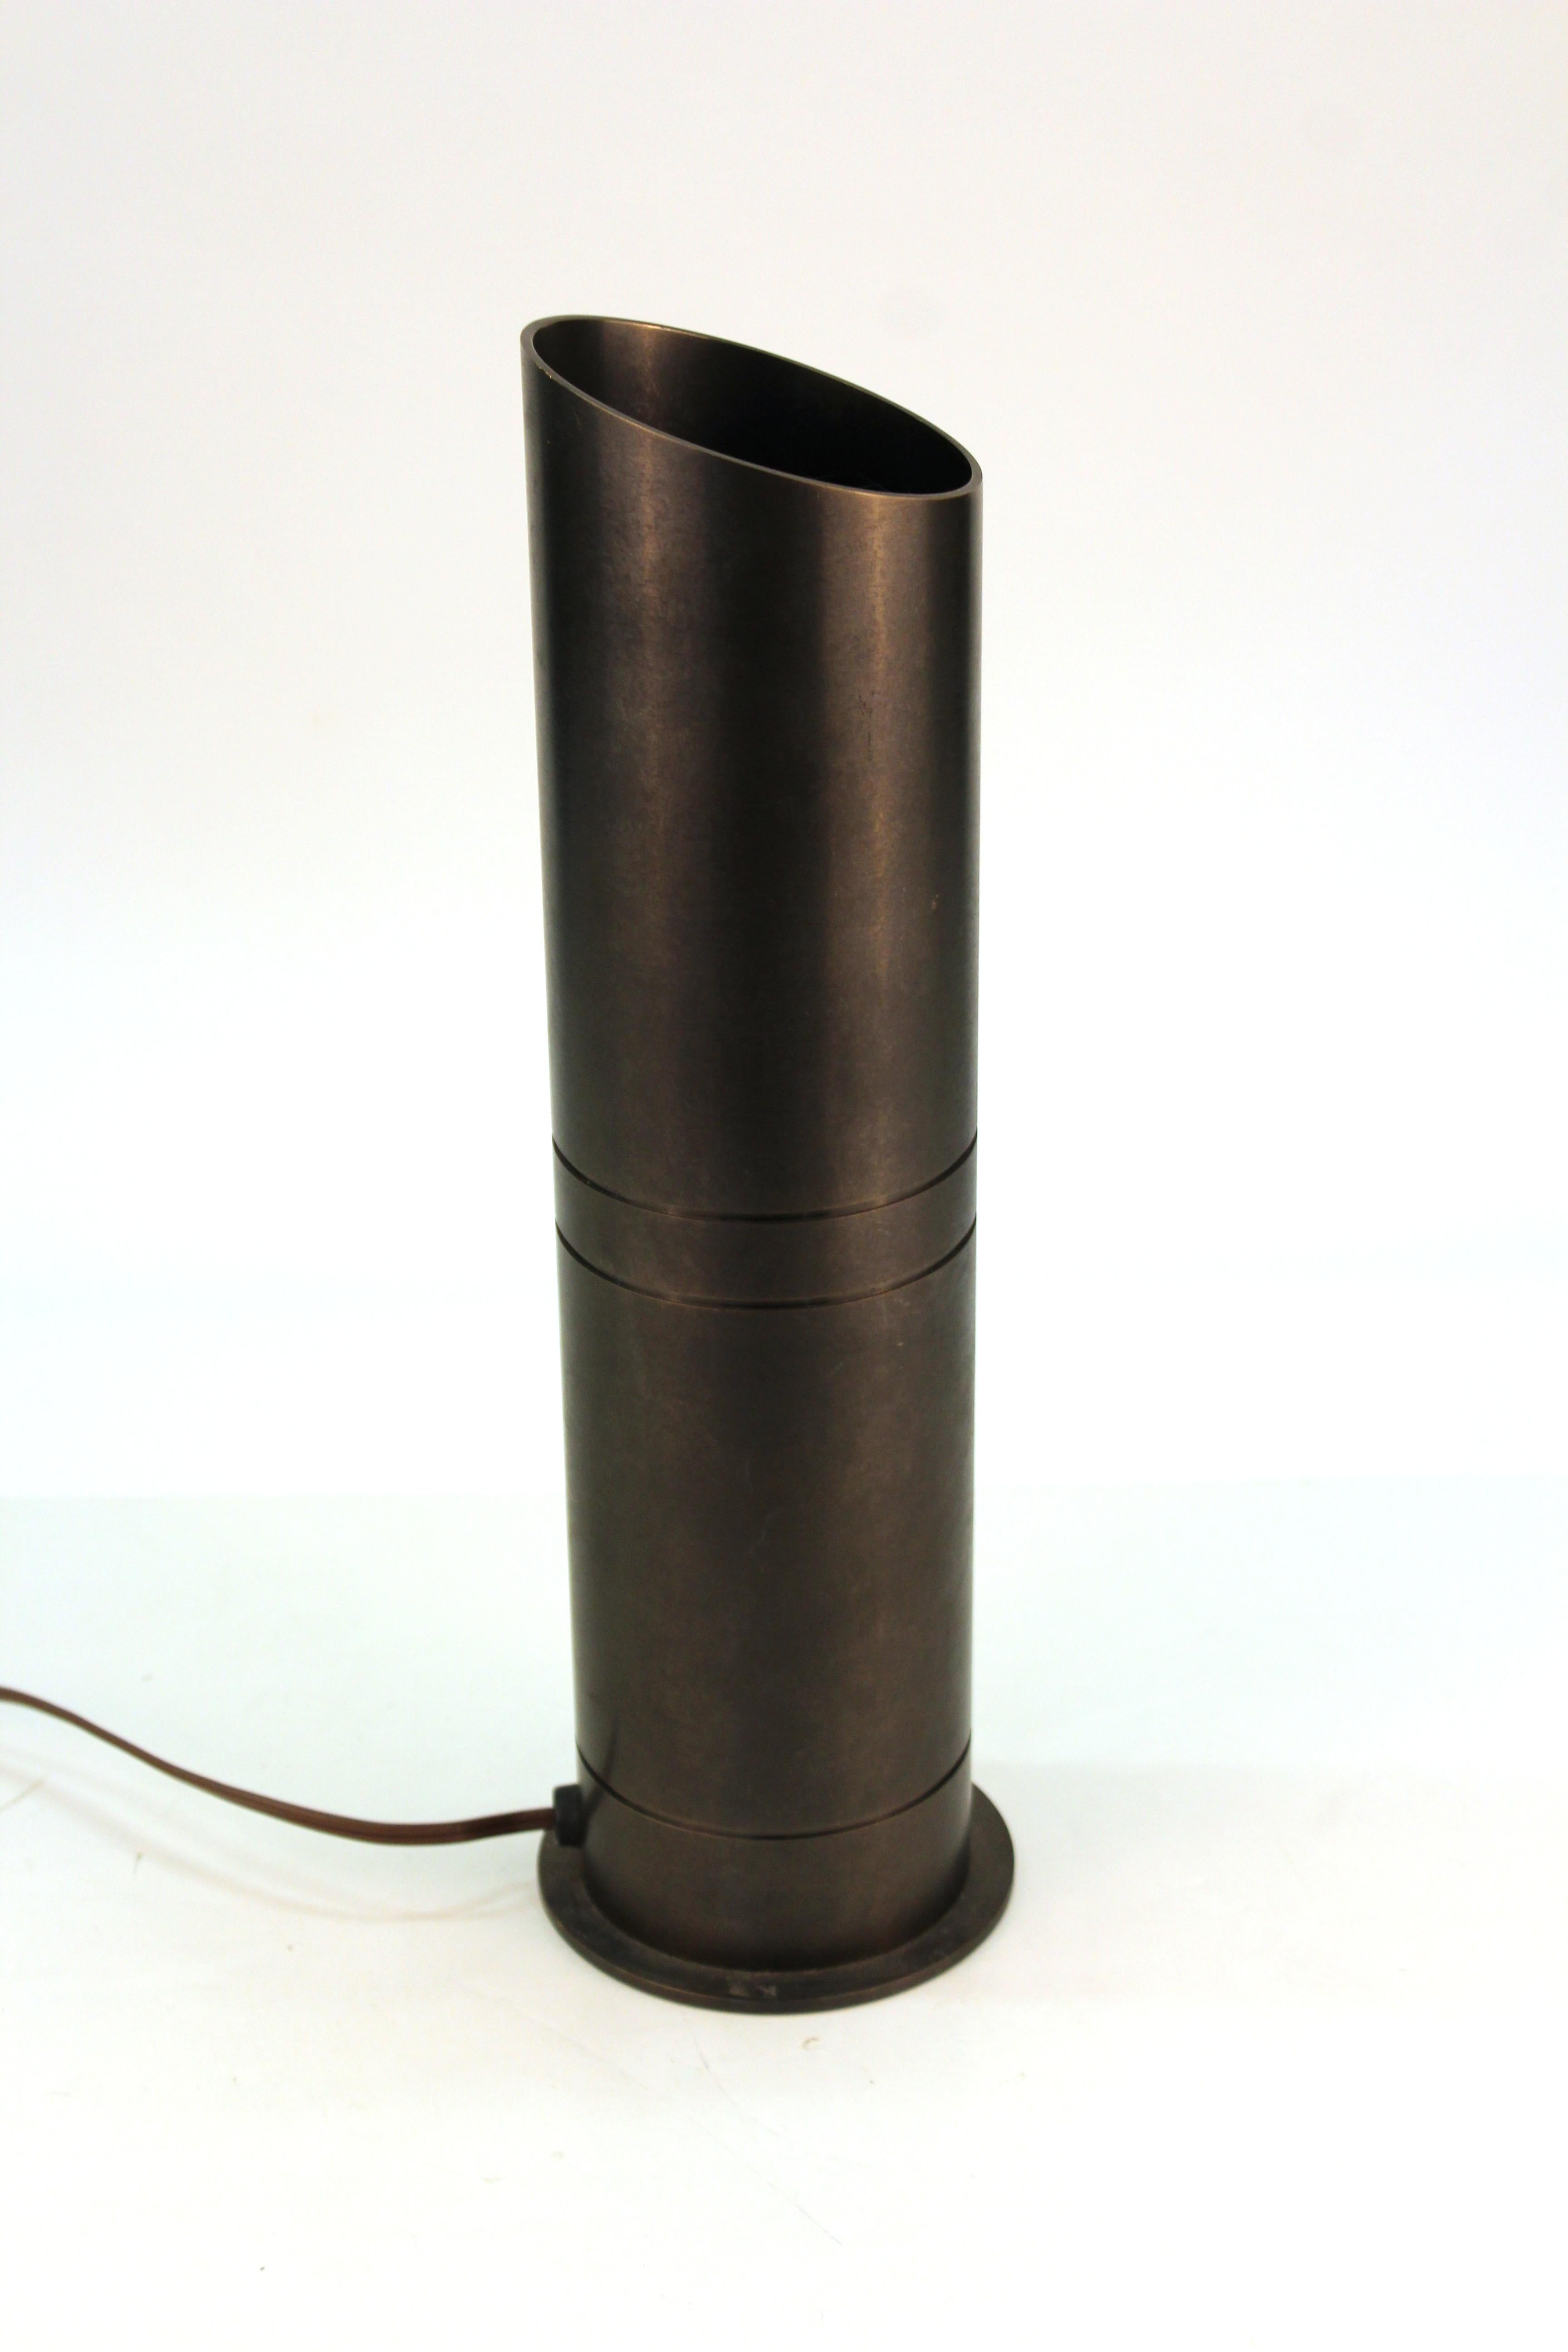 Moderne Tisch- oder Stehlampe im Stil von Karl Springer aus Bronze mit dunkler satinierter Oberfläche. Die Lichtquelle ist nach oben zur Decke gerichtet. Das Stück wurde Mitte der 1970er Jahre in den Vereinigten Staaten hergestellt und befindet sich